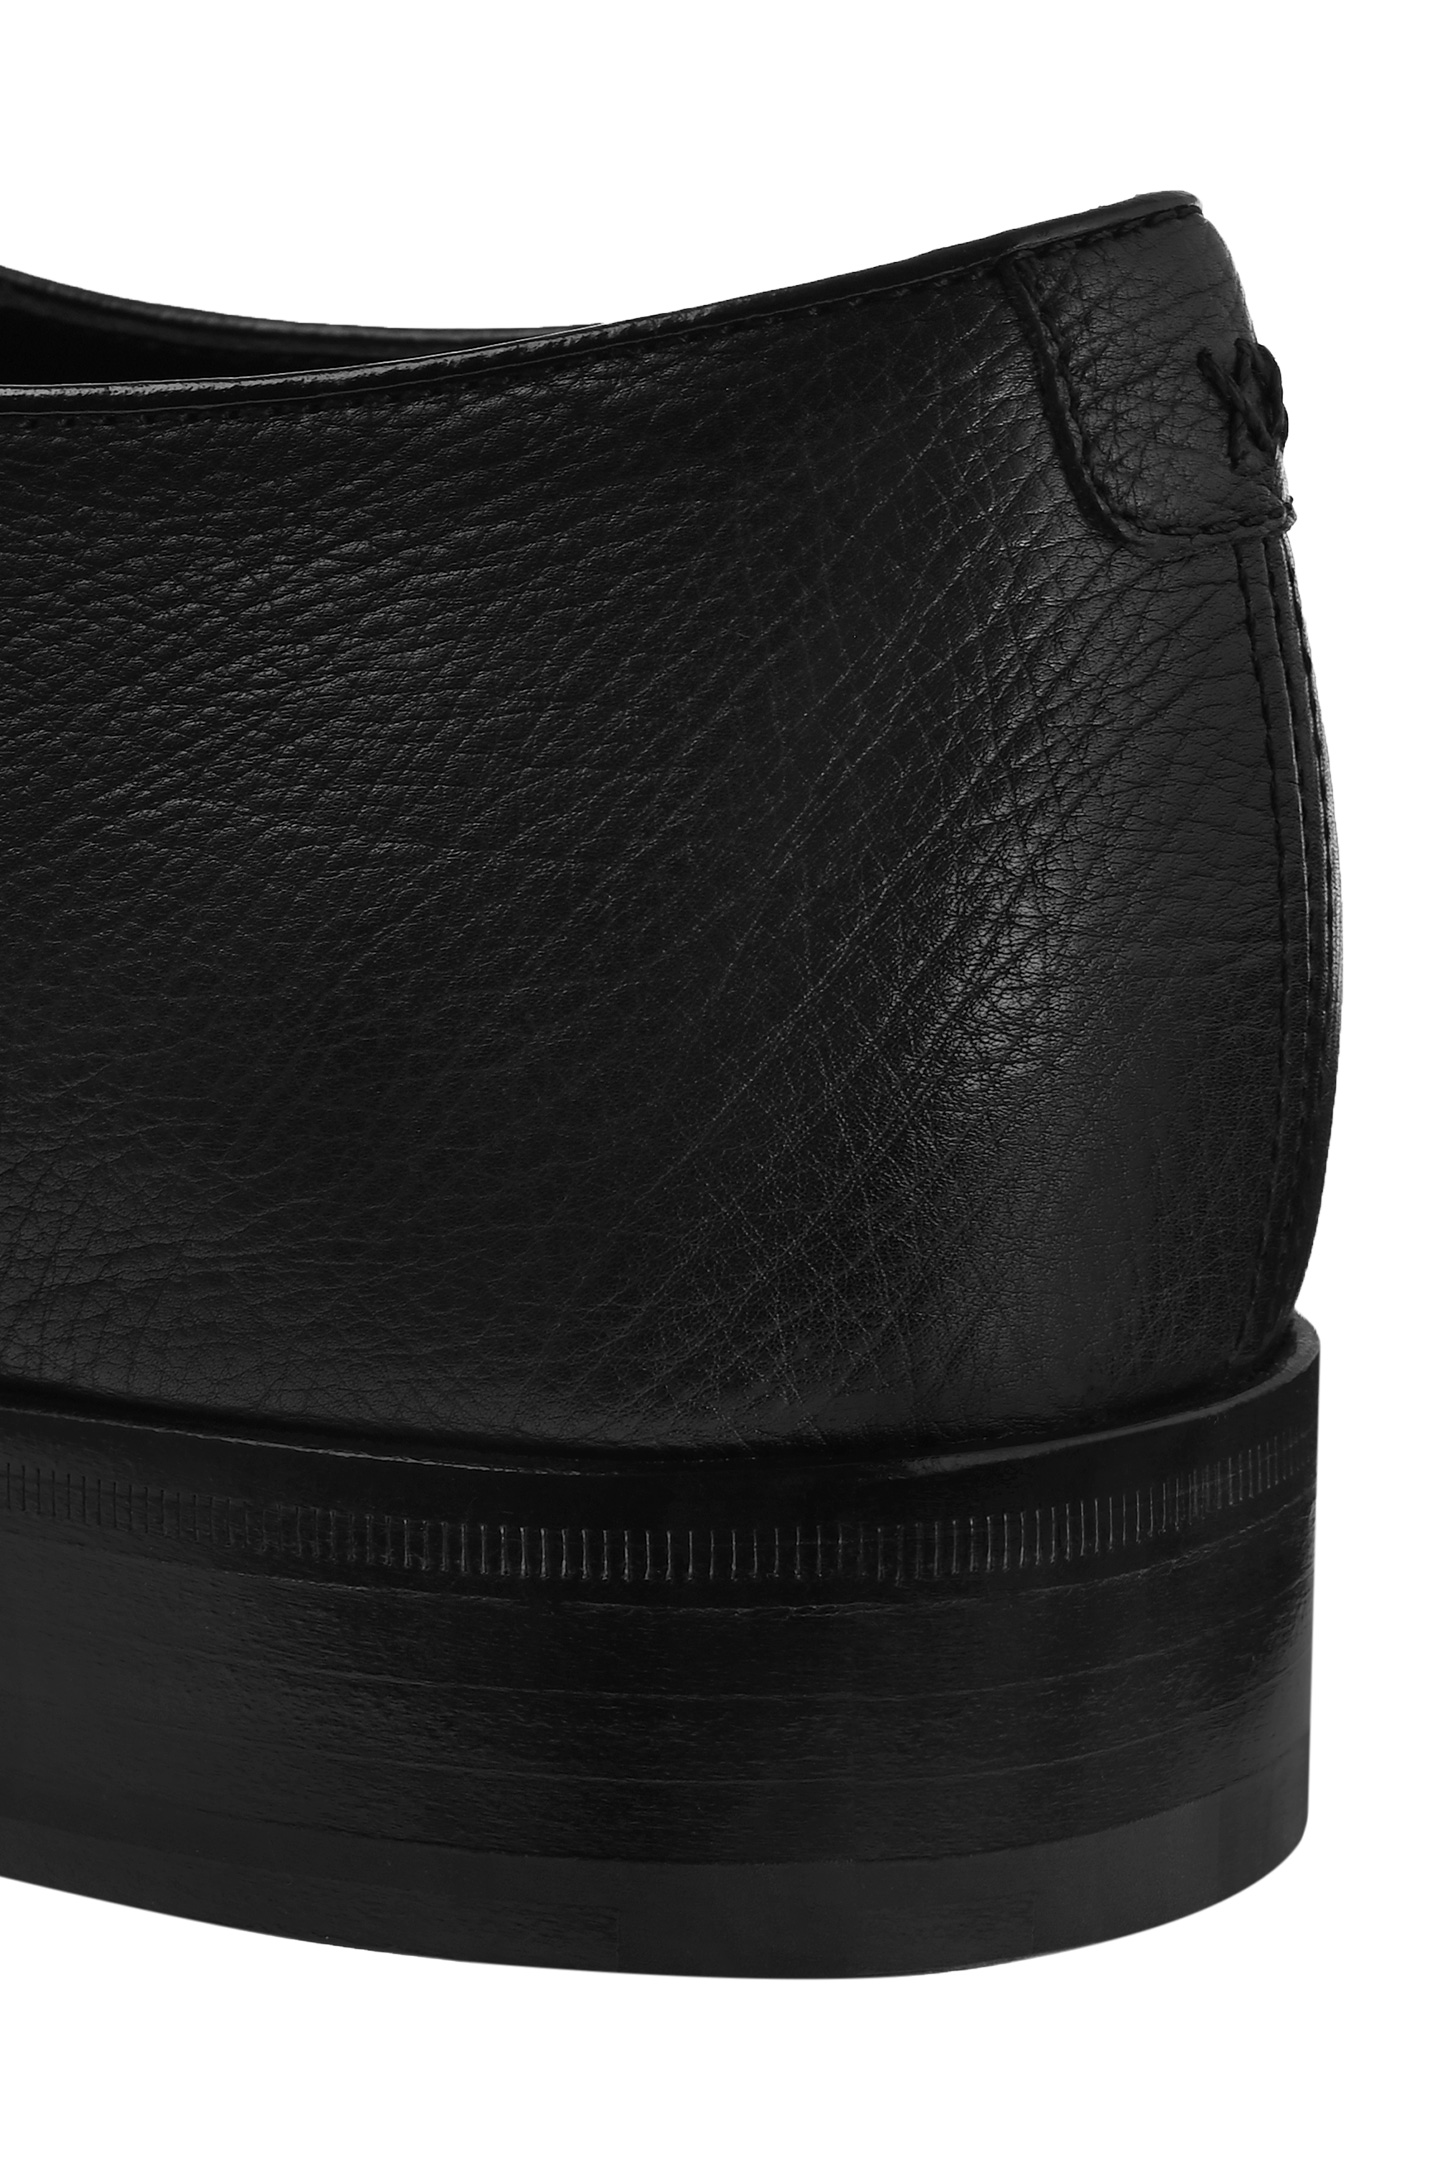 Туфли ARTIOLI 06S189, цвет: Черный, Мужской